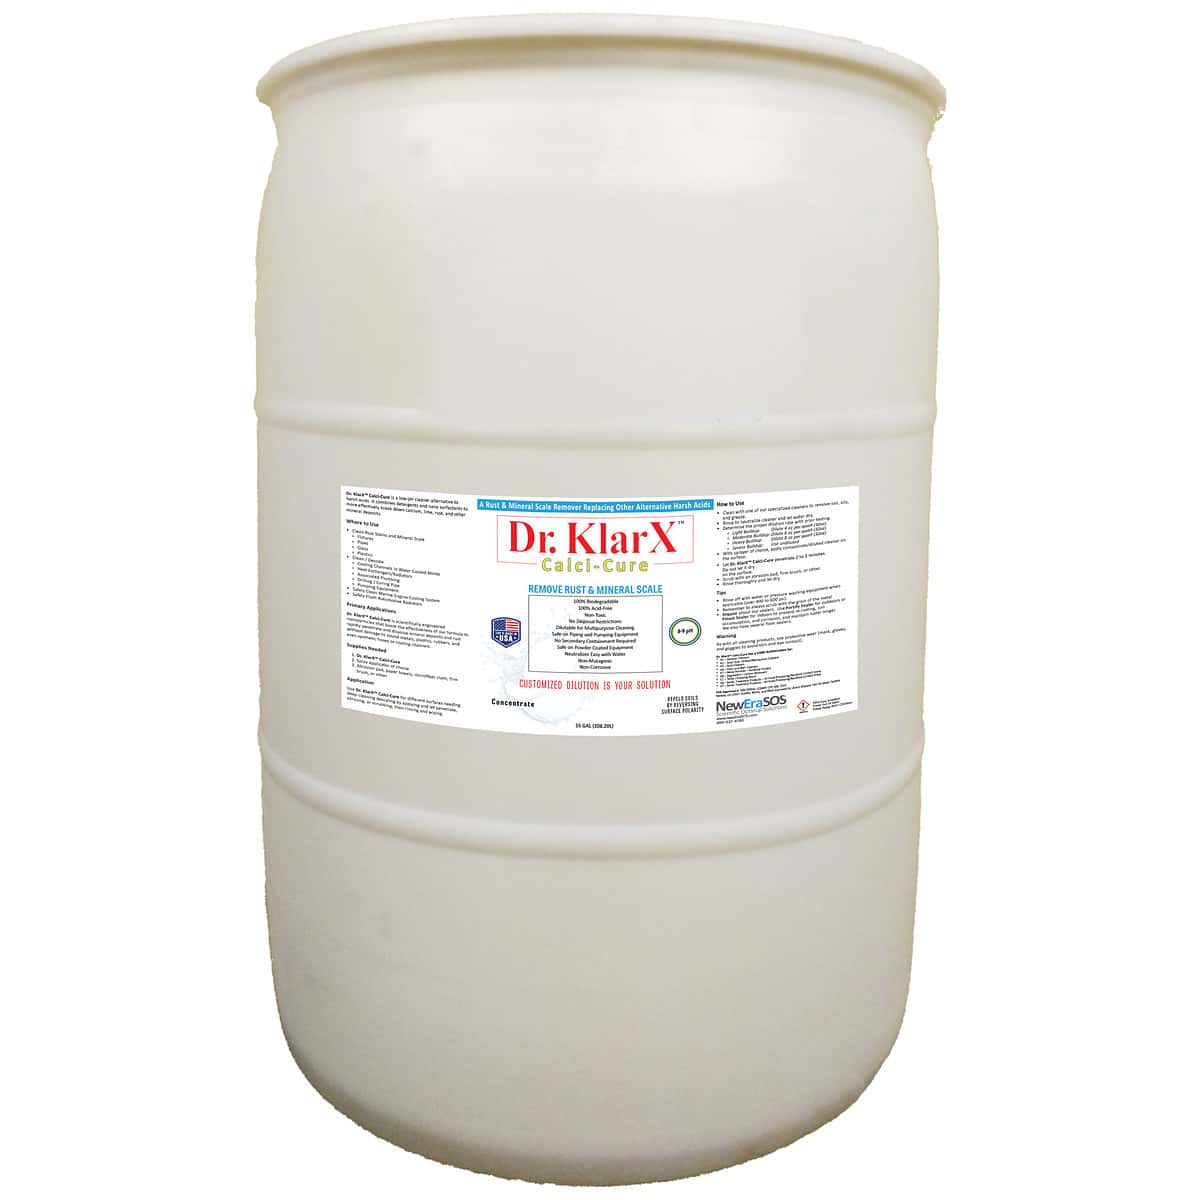 Dr KlarX Calci-Cure 55-Gallon Drum